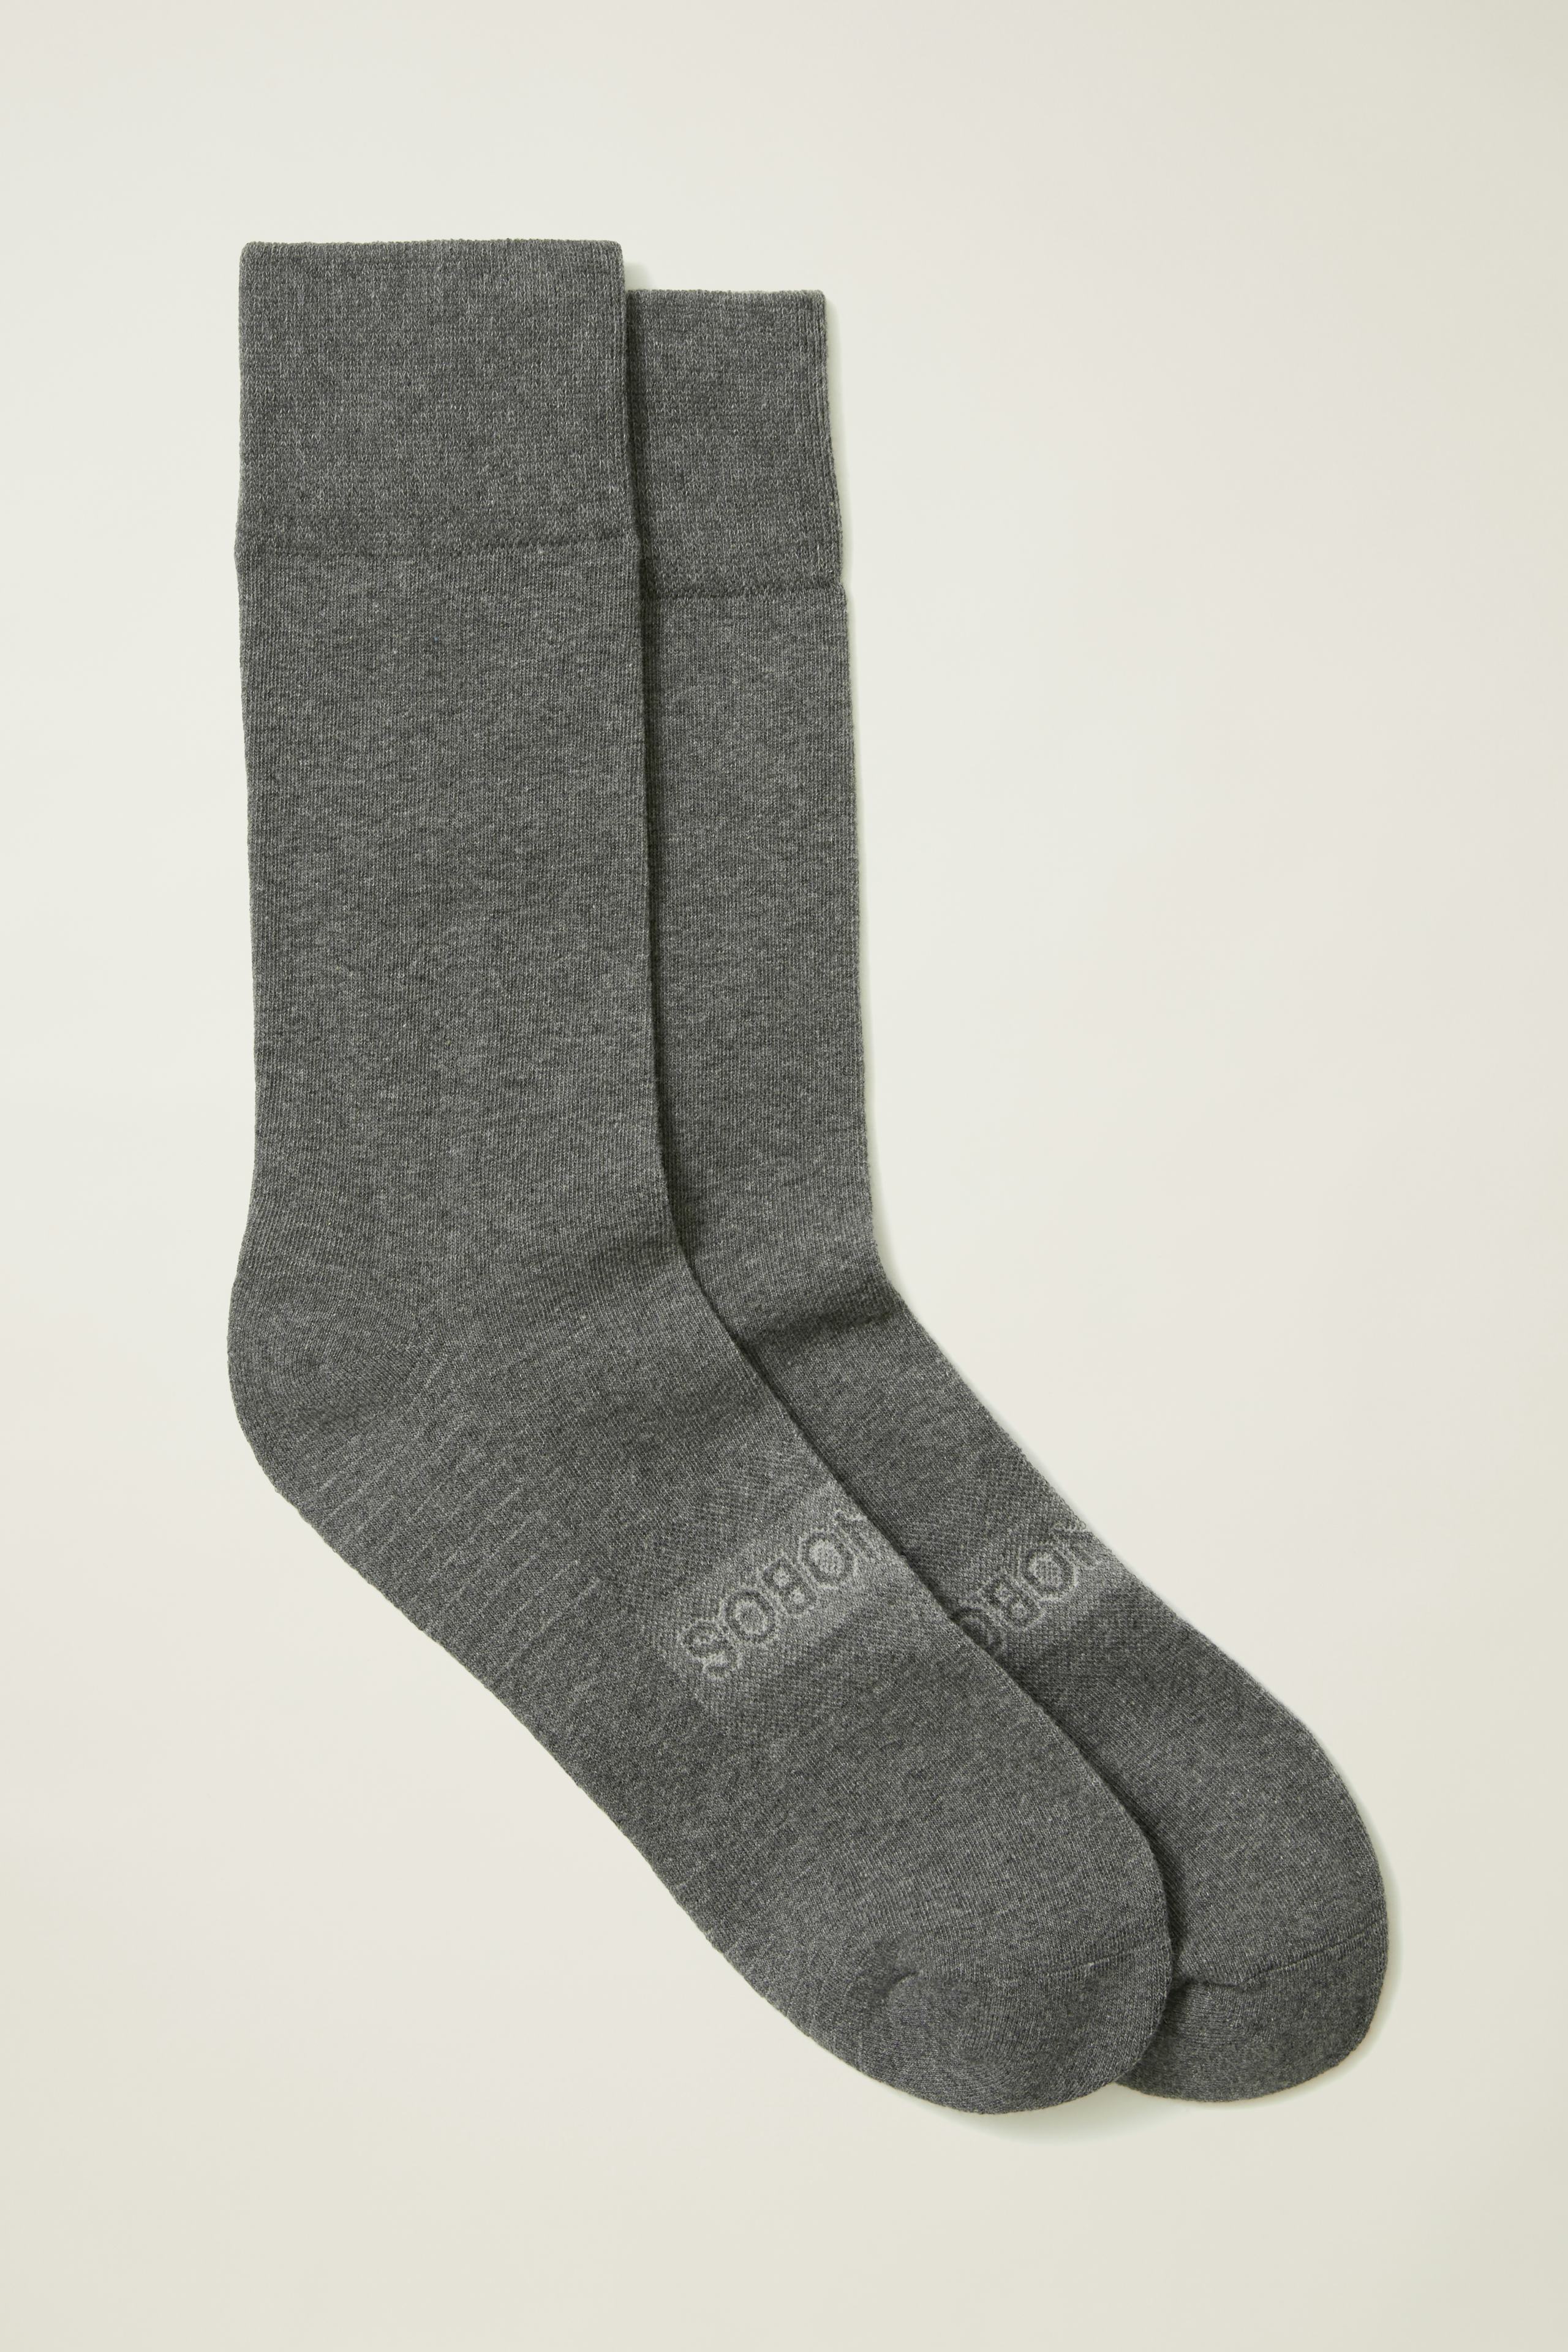 Soft Everyday Socks